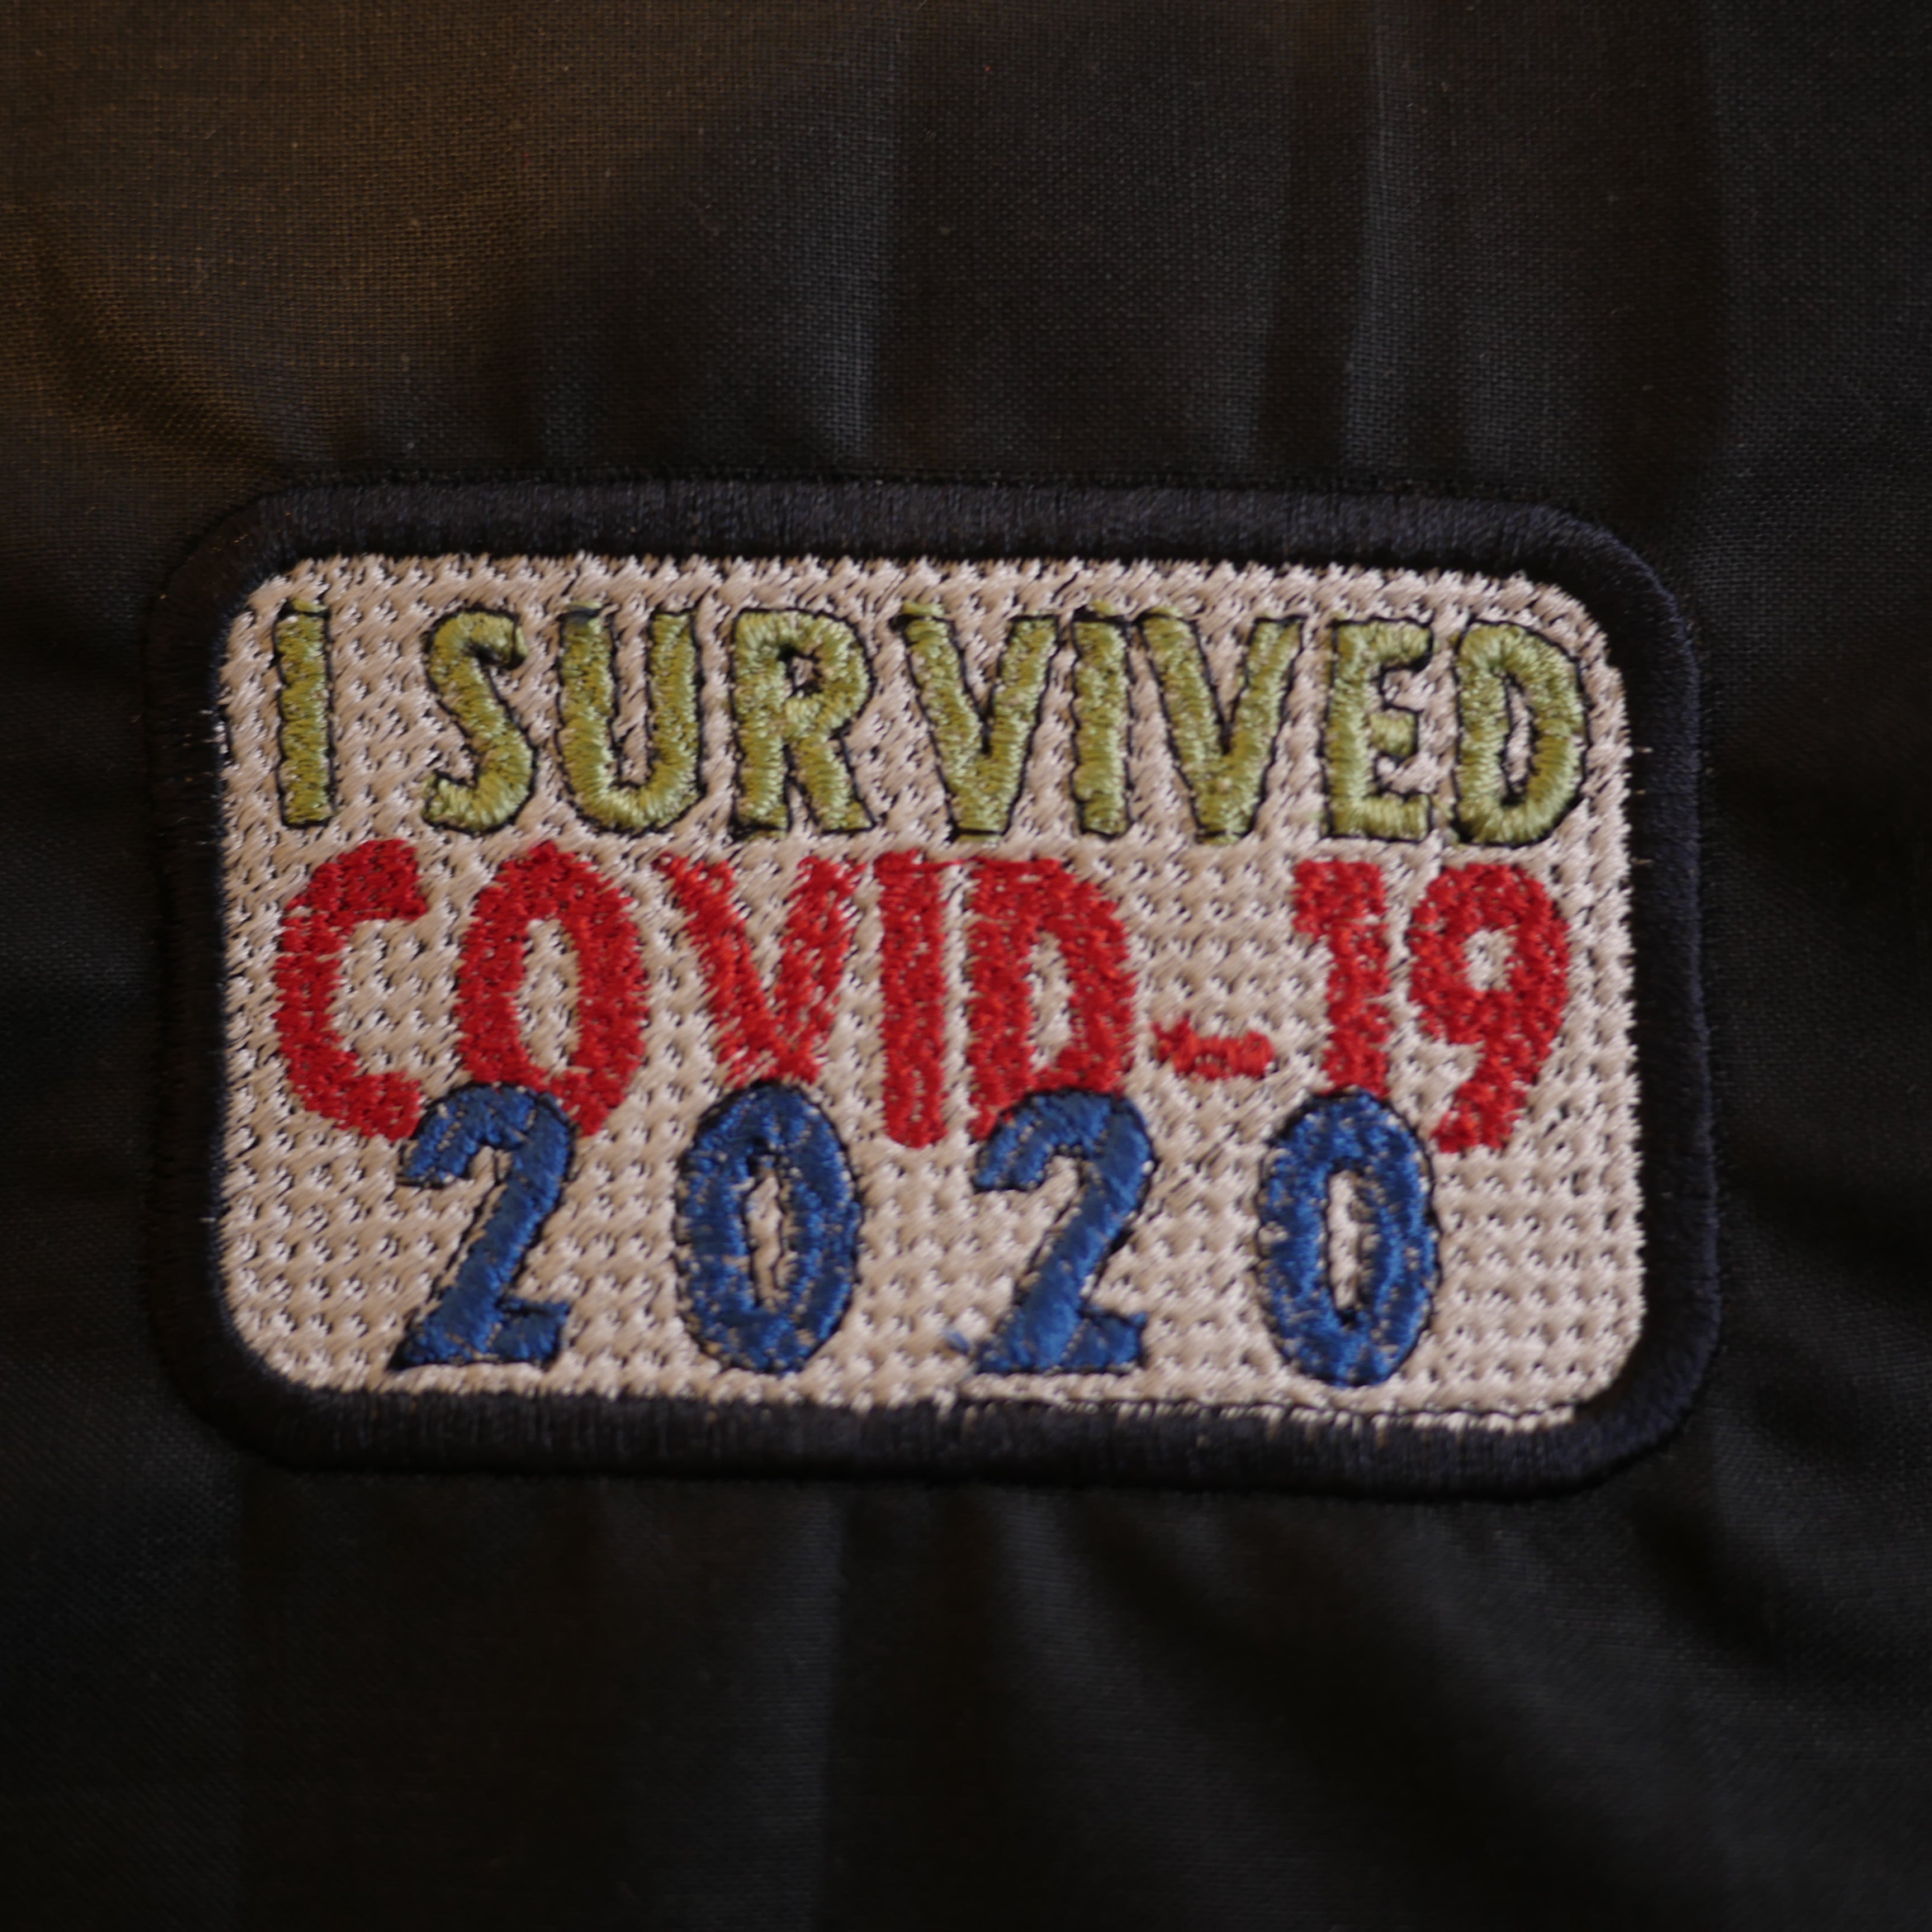 Covid-19 Survival Embroidery Design